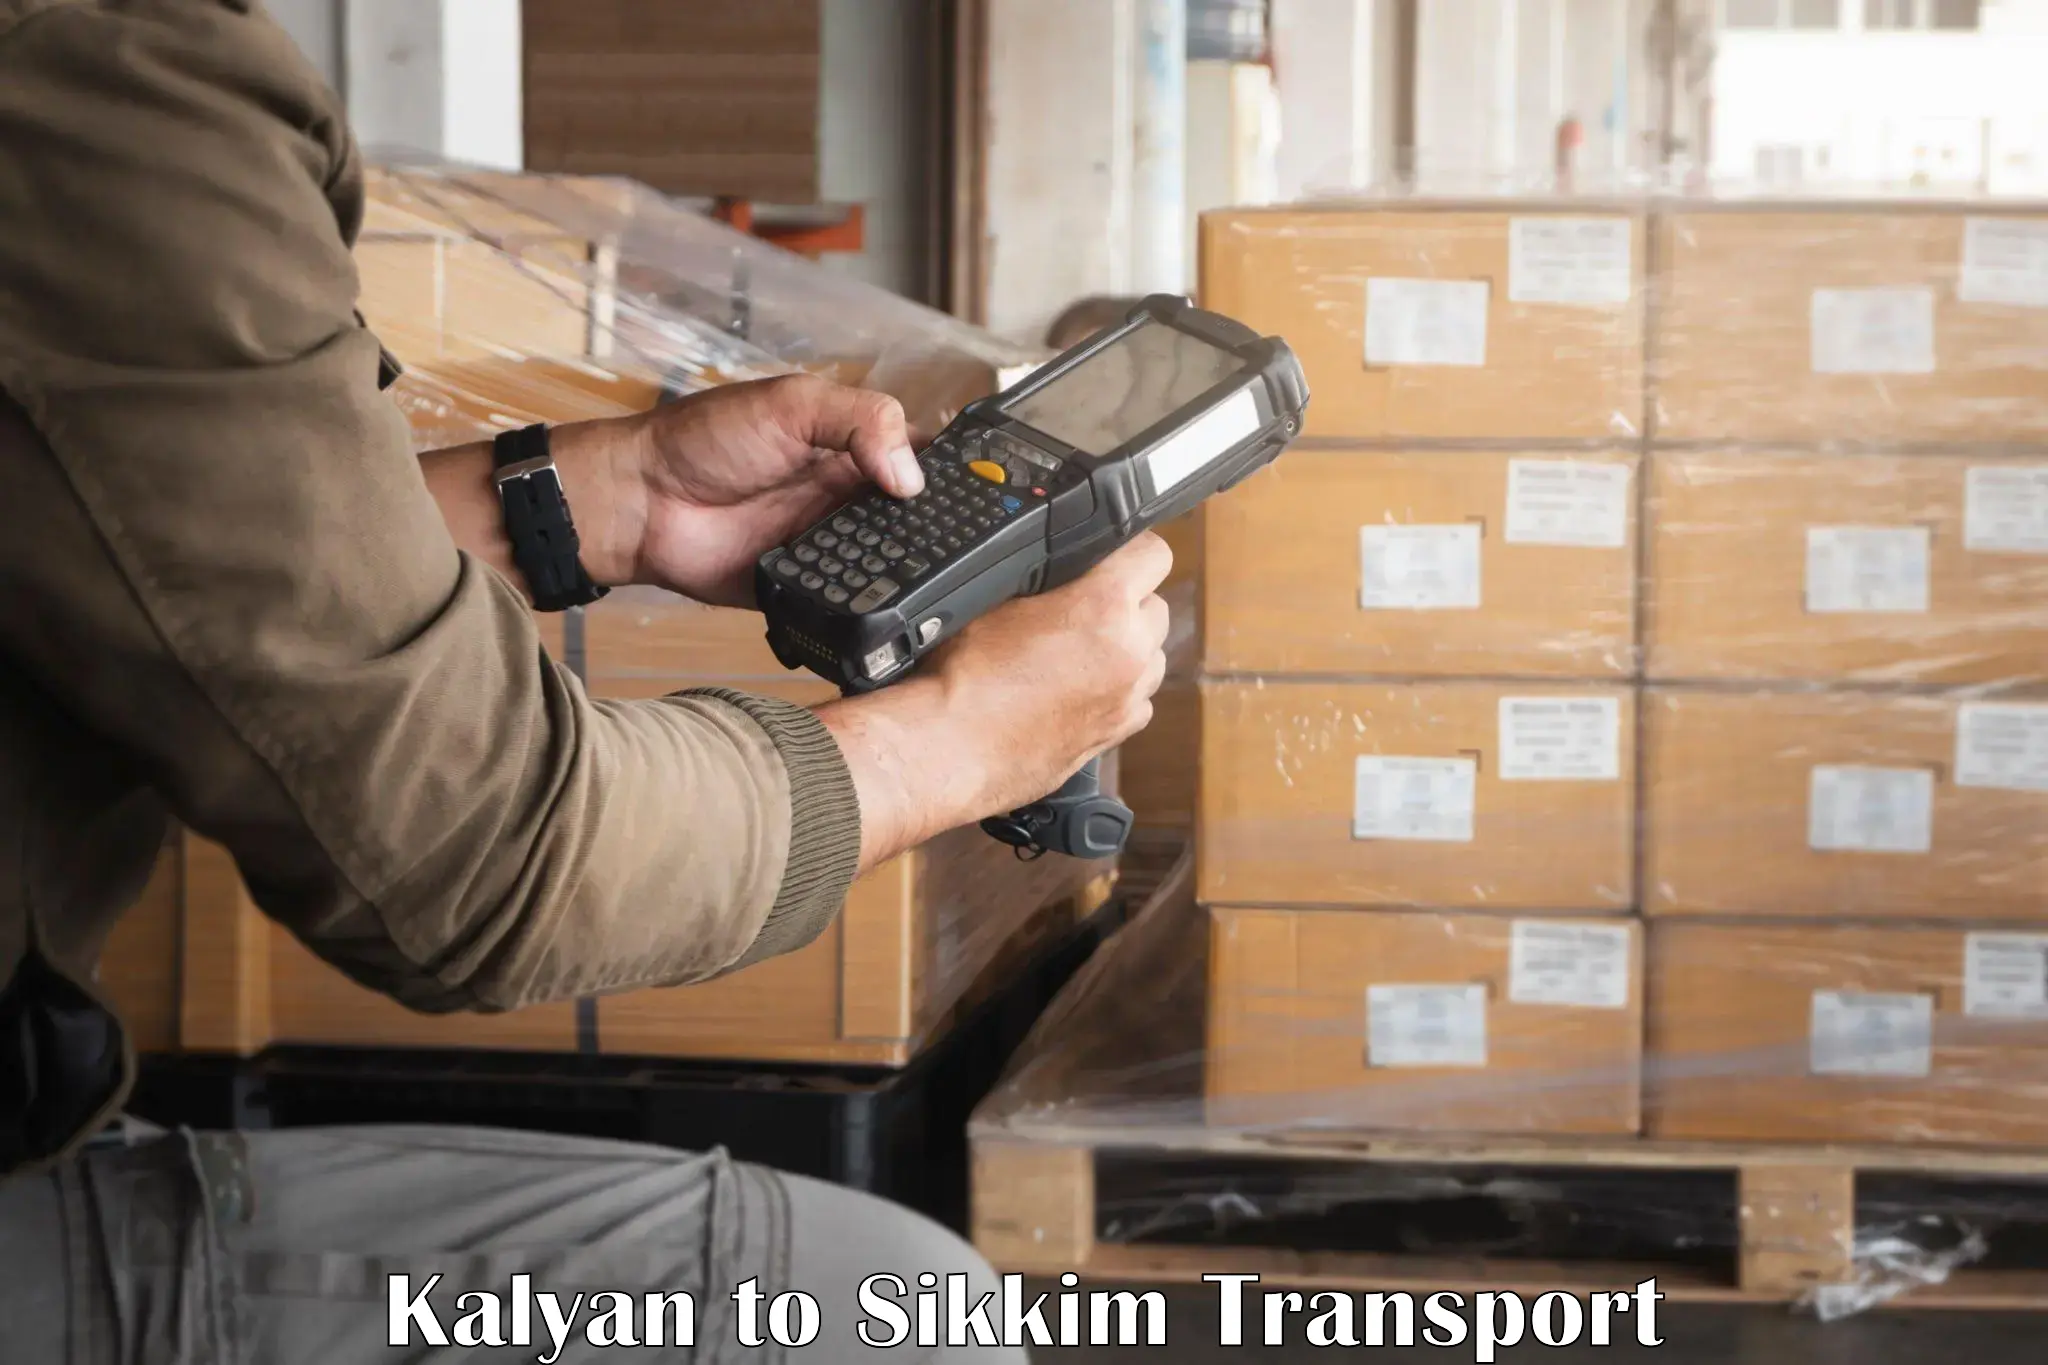 Lorry transport service Kalyan to Rangpo